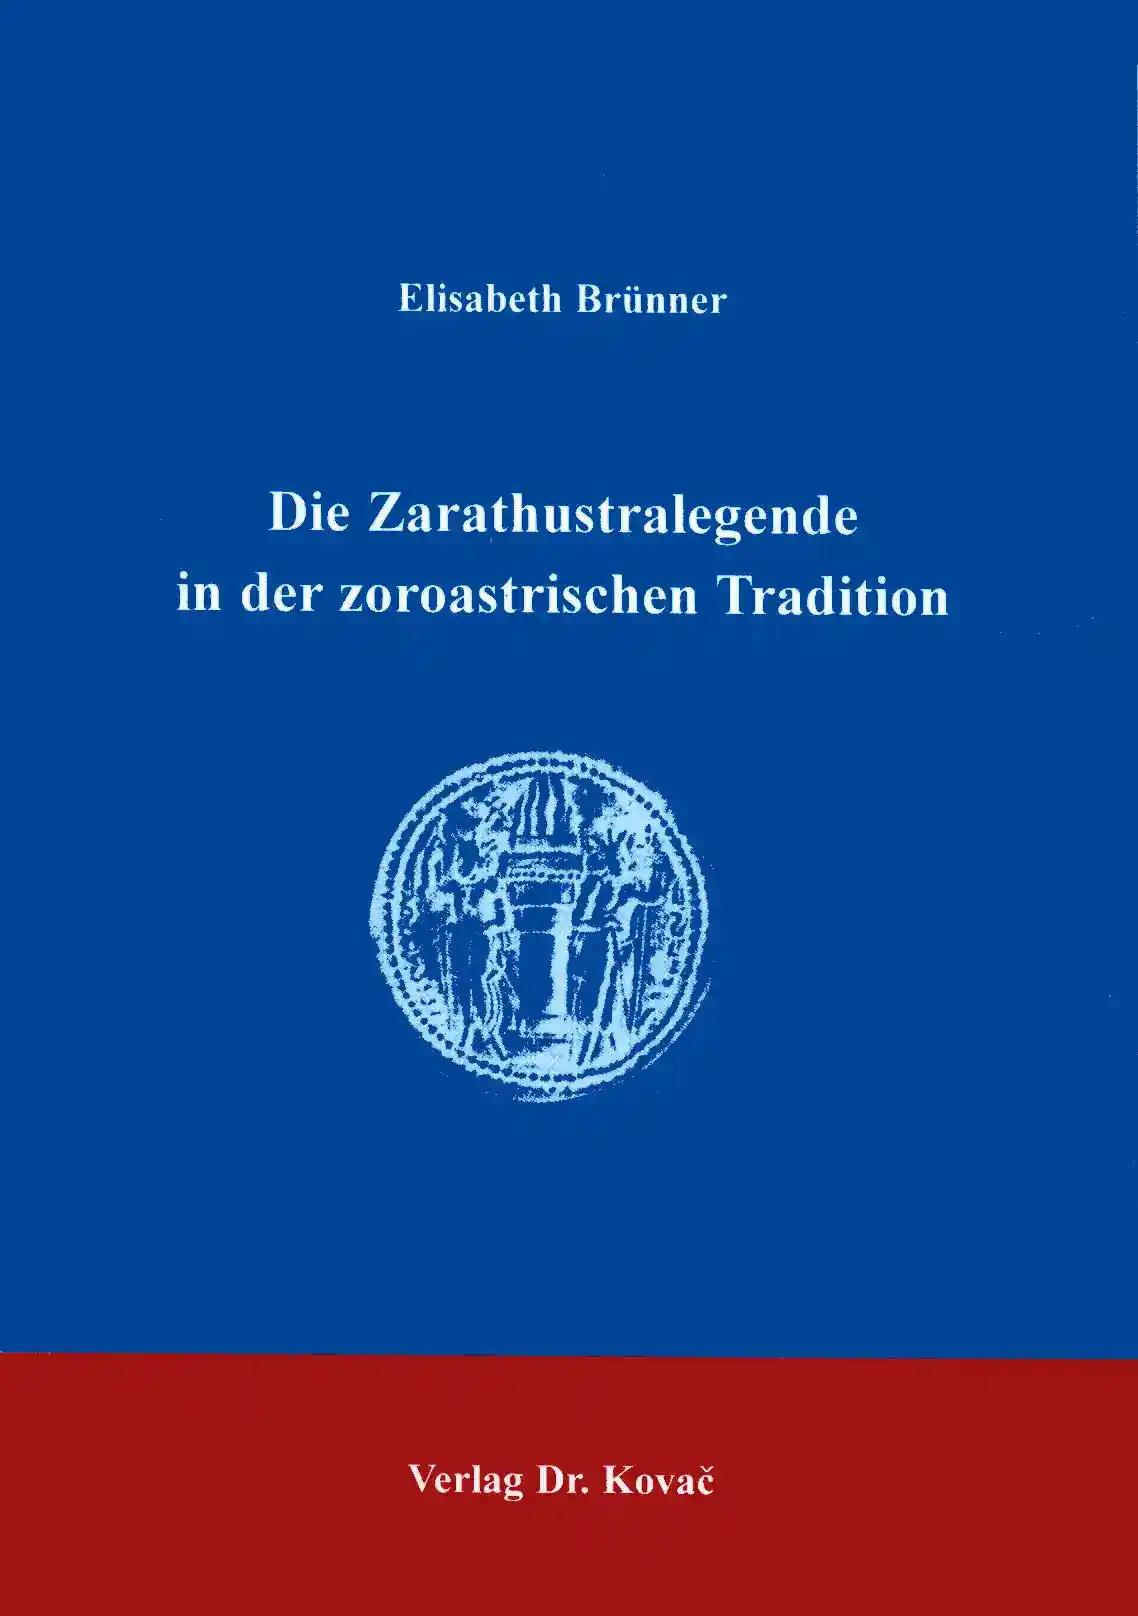 Die Zarathustralegende in der zoroastrischen Tradition, - Elisabeth Brünner